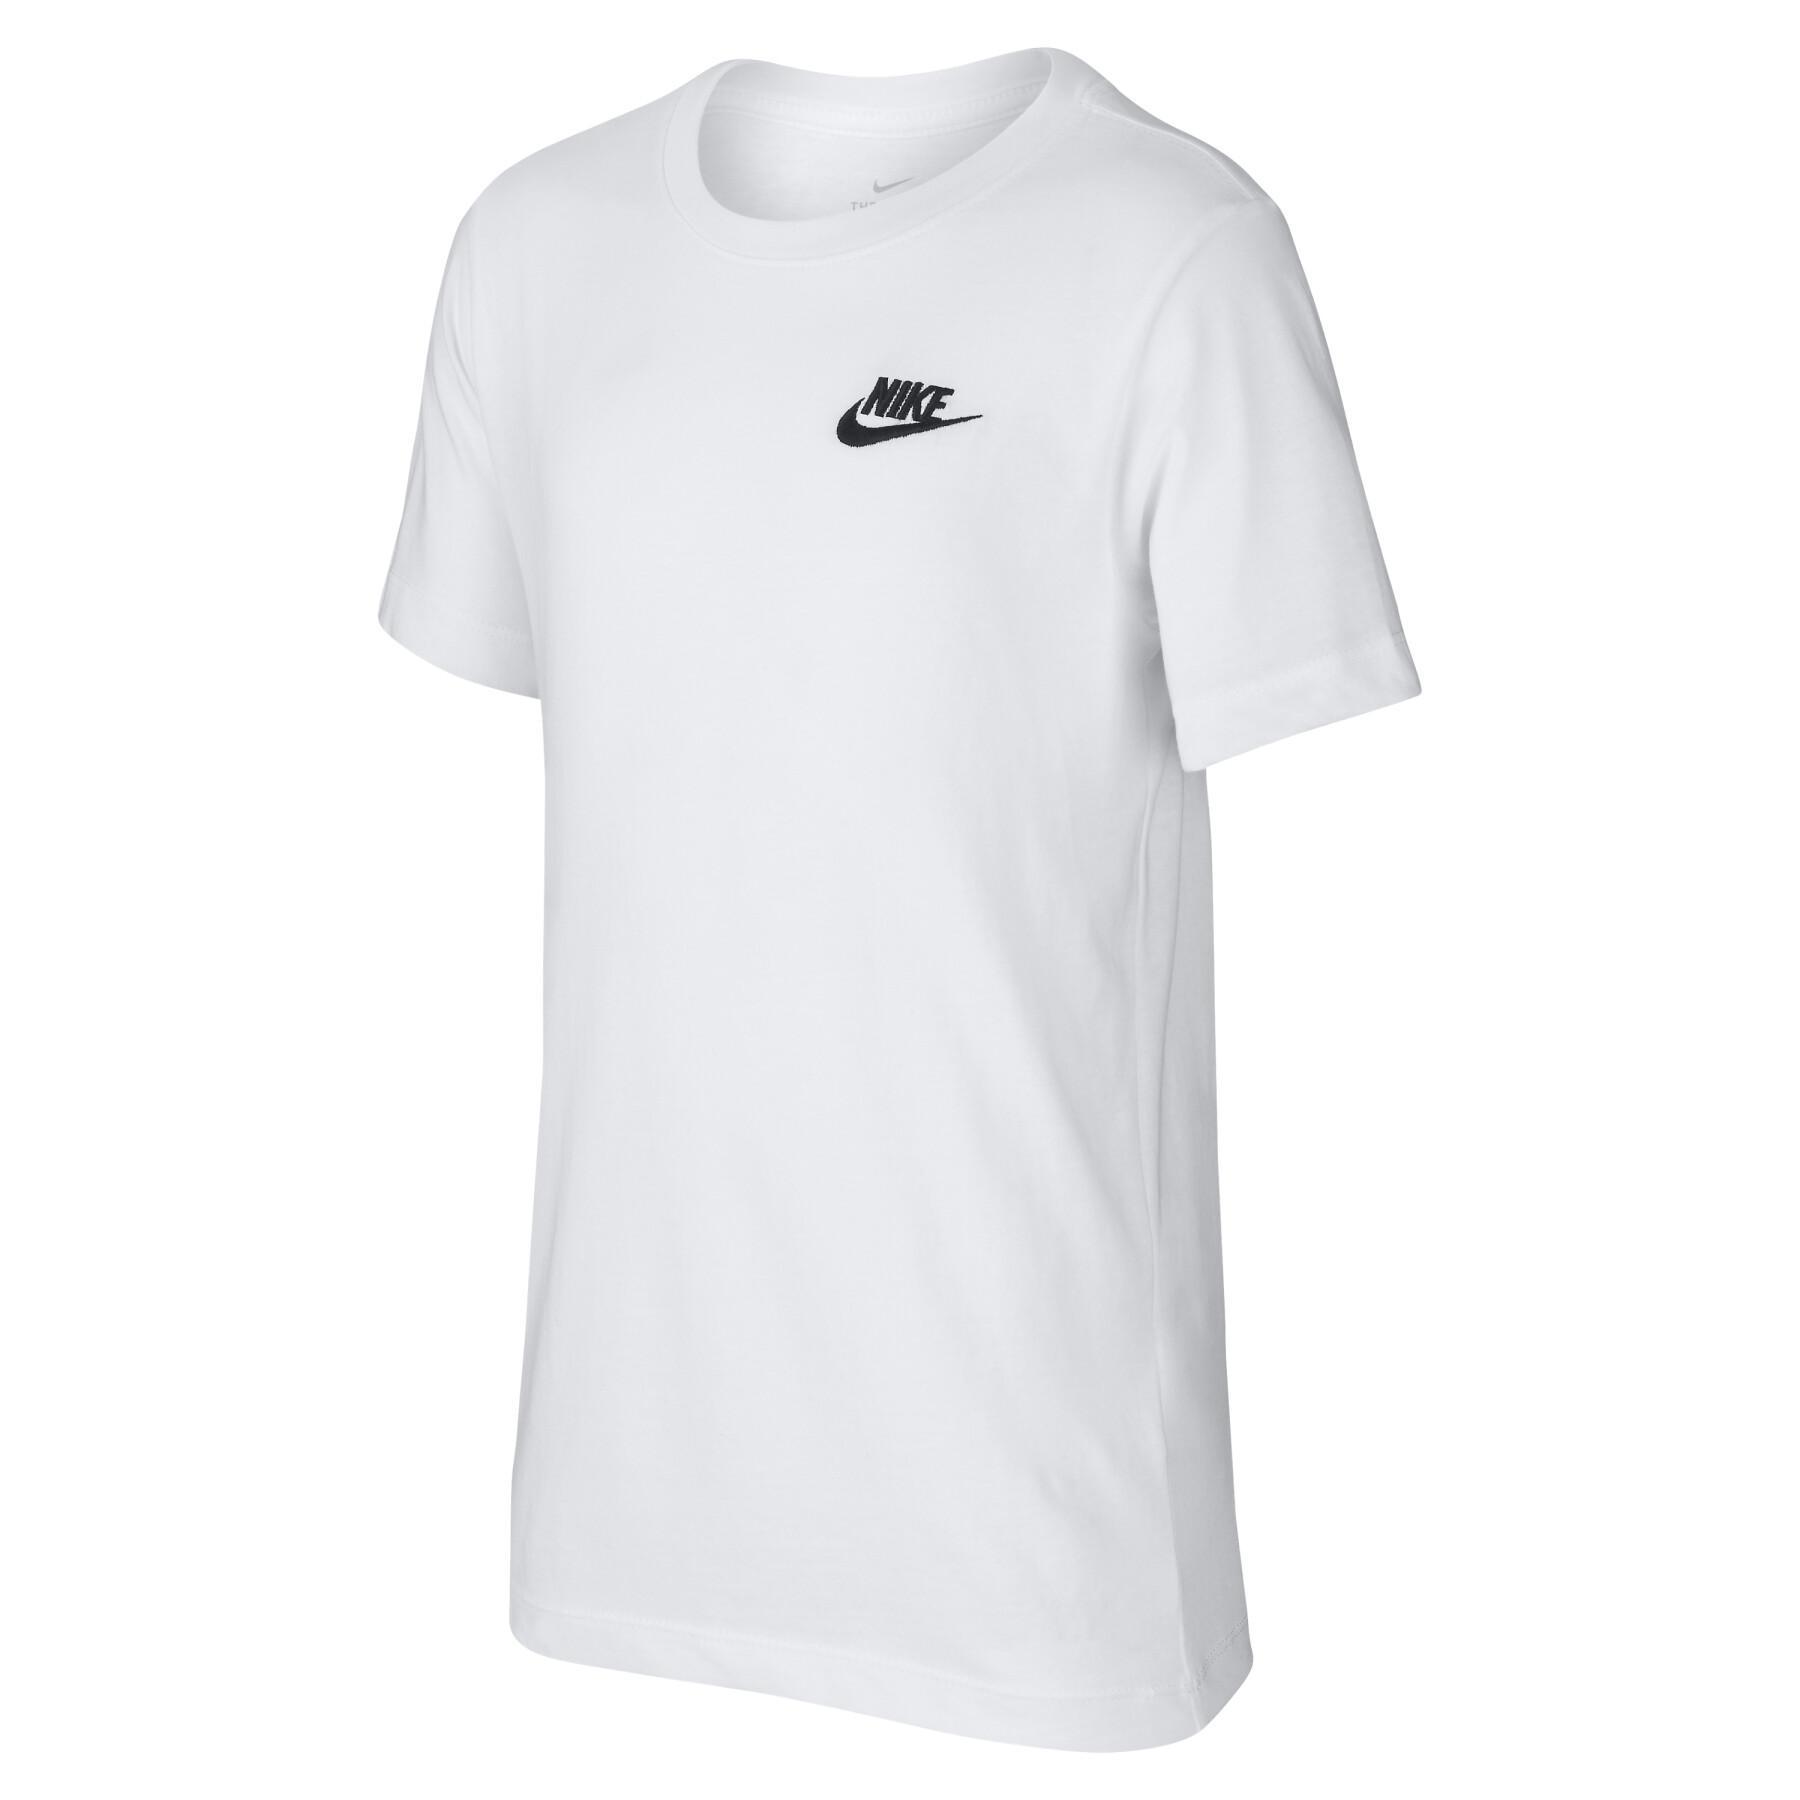 Camiseta para niños Nike Sportswear